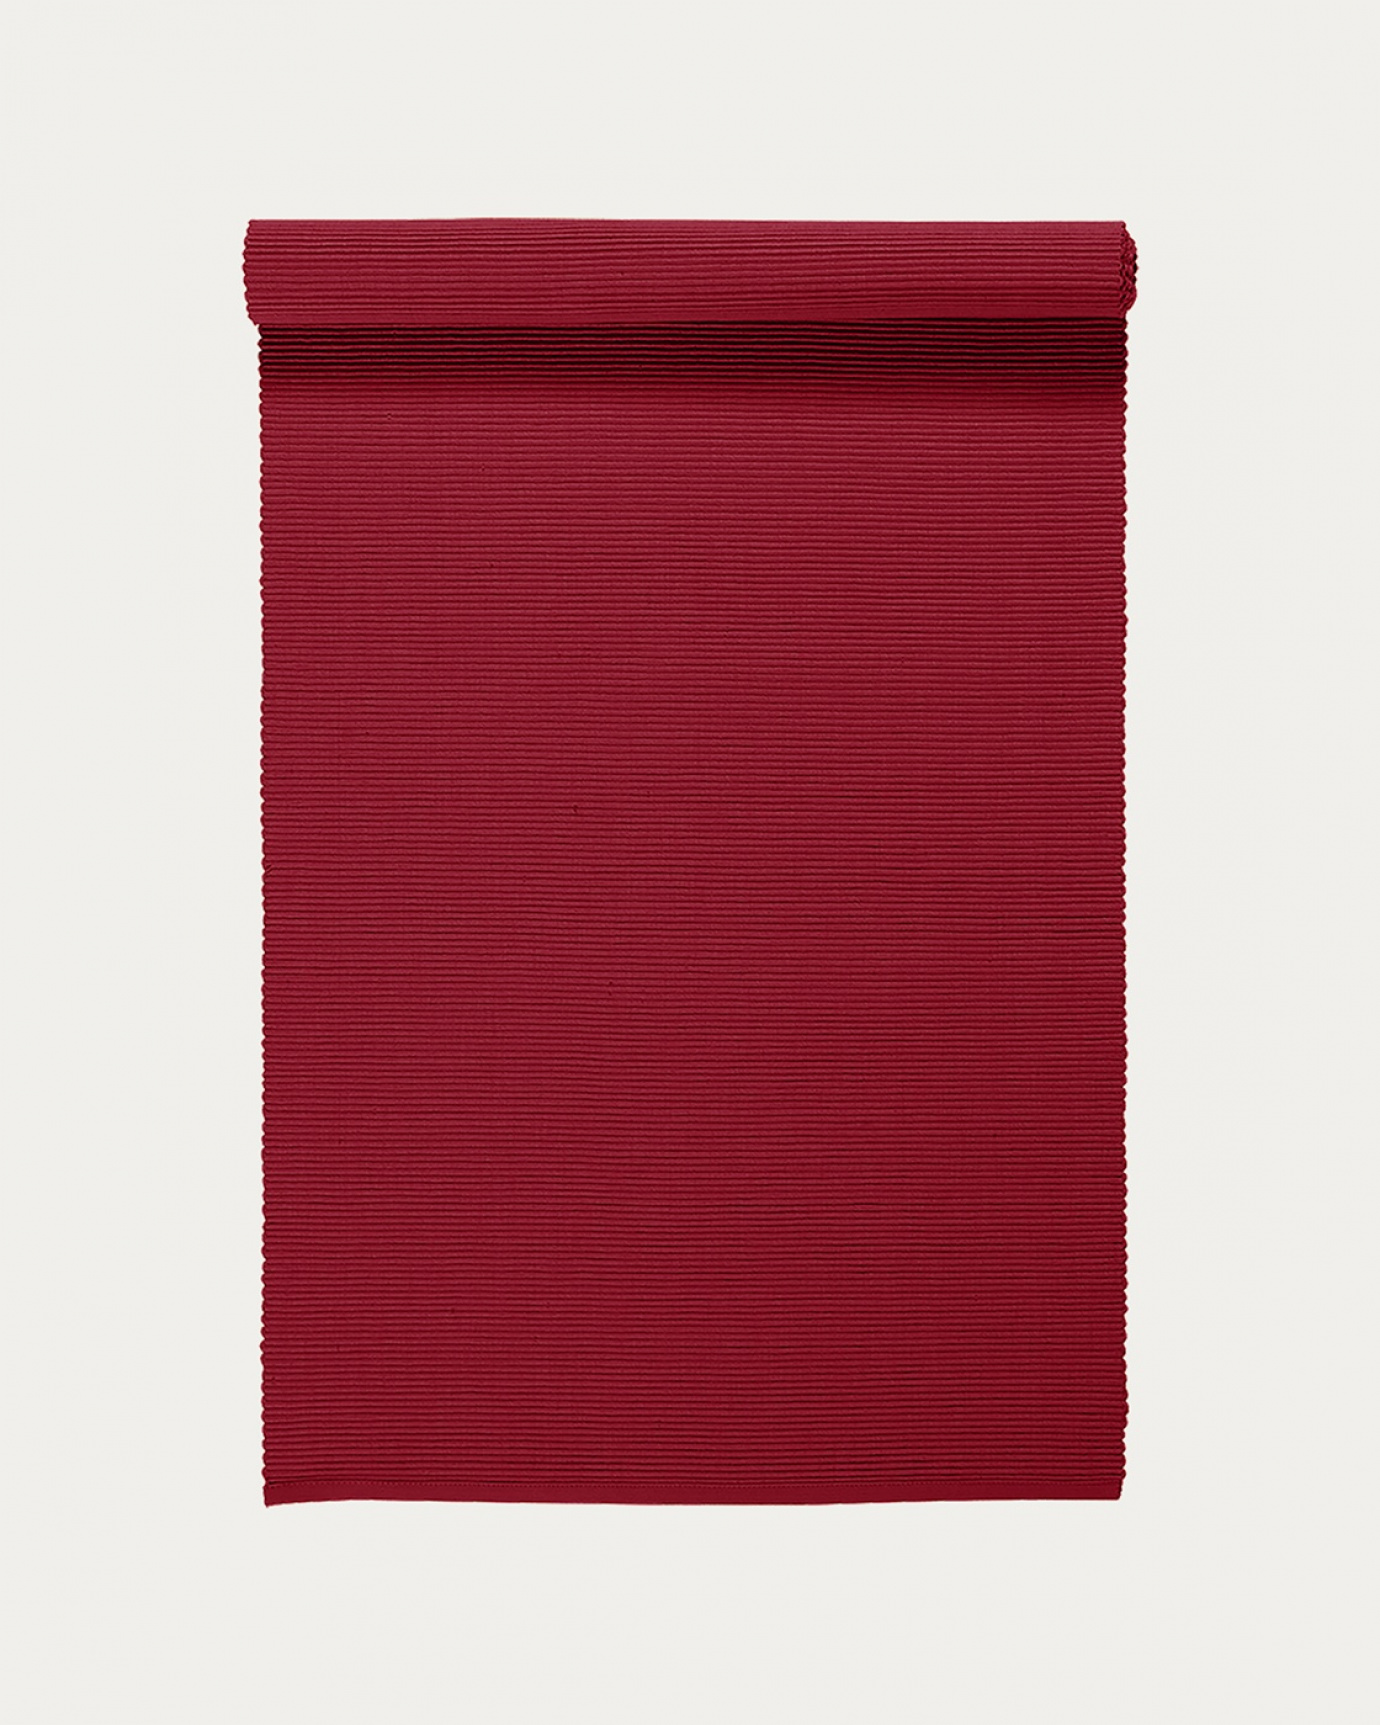 Image du produit chemin de table UNI rouge en coton doux de qualité côtelée de LINUM DESIGN. Taille 45 x 150 cm.